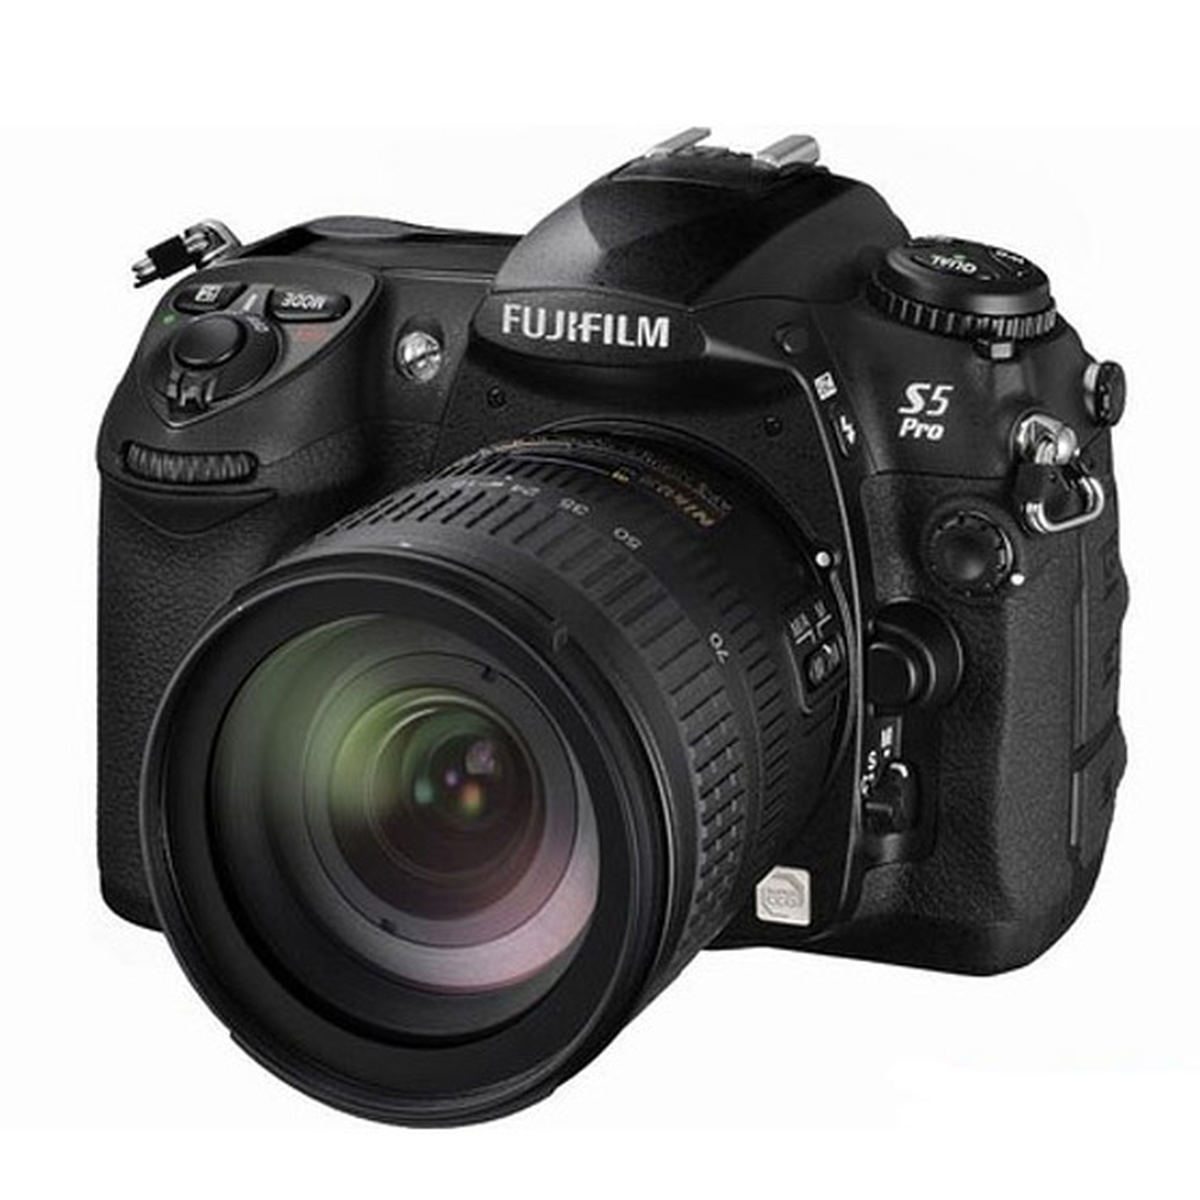 Fujifilm S5 Pro : Caratteristiche e Opinioni | JuzaPhoto